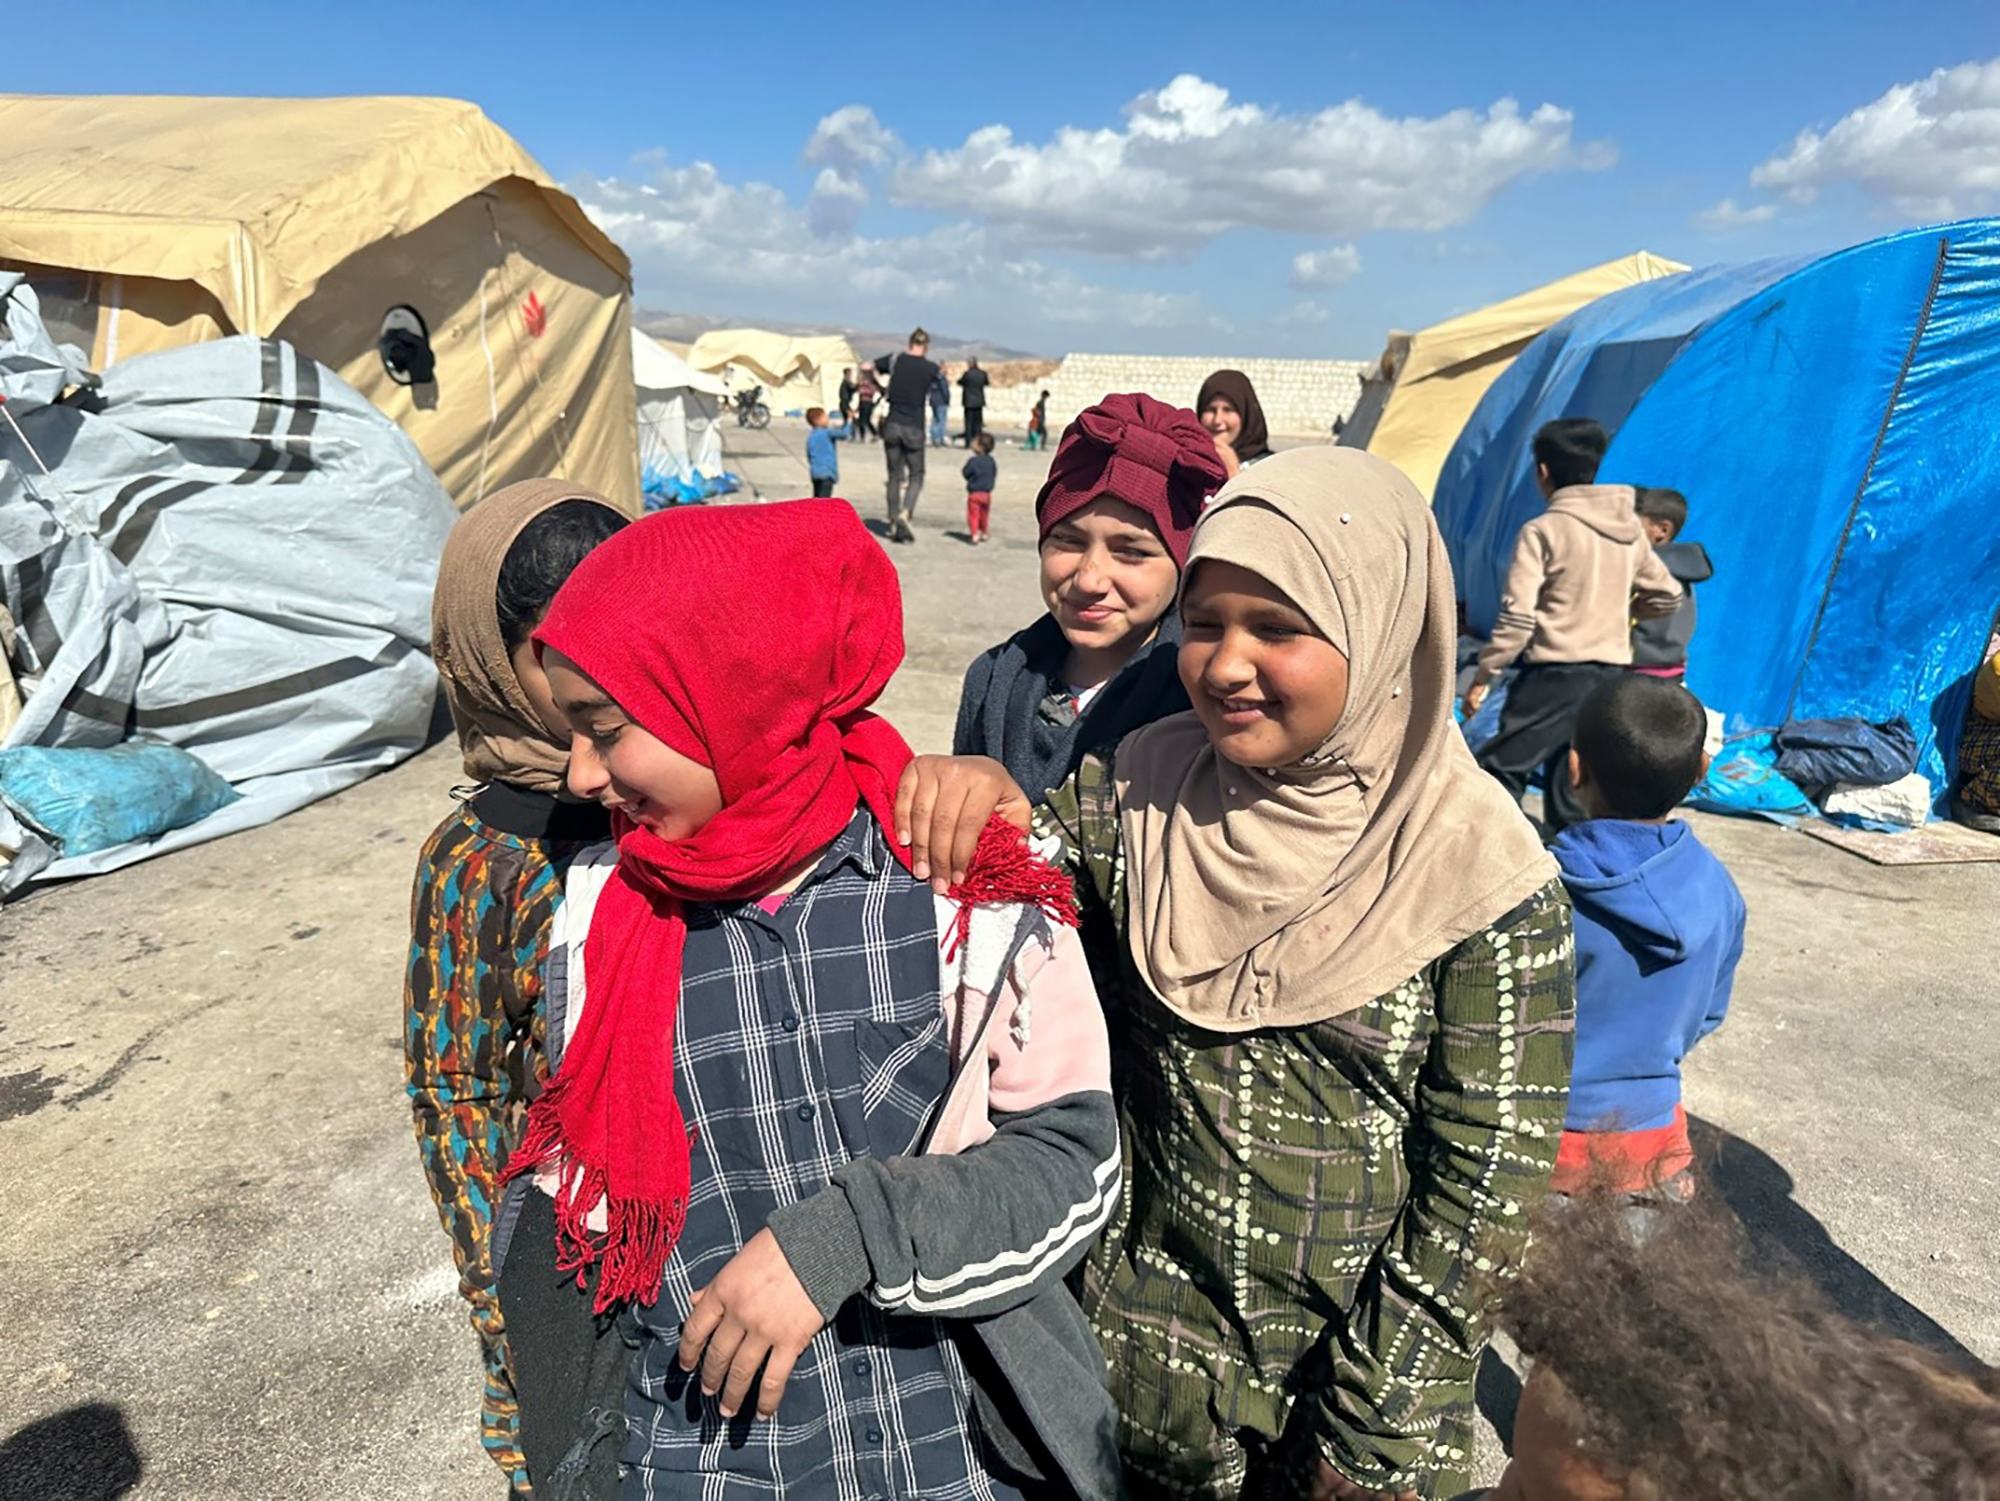 أطفال من مخيم الحمّام، وهو مركز الاستقبال للنازحين يضم حوالي 75 عائلة في جنديرس بمحافظة حلب 